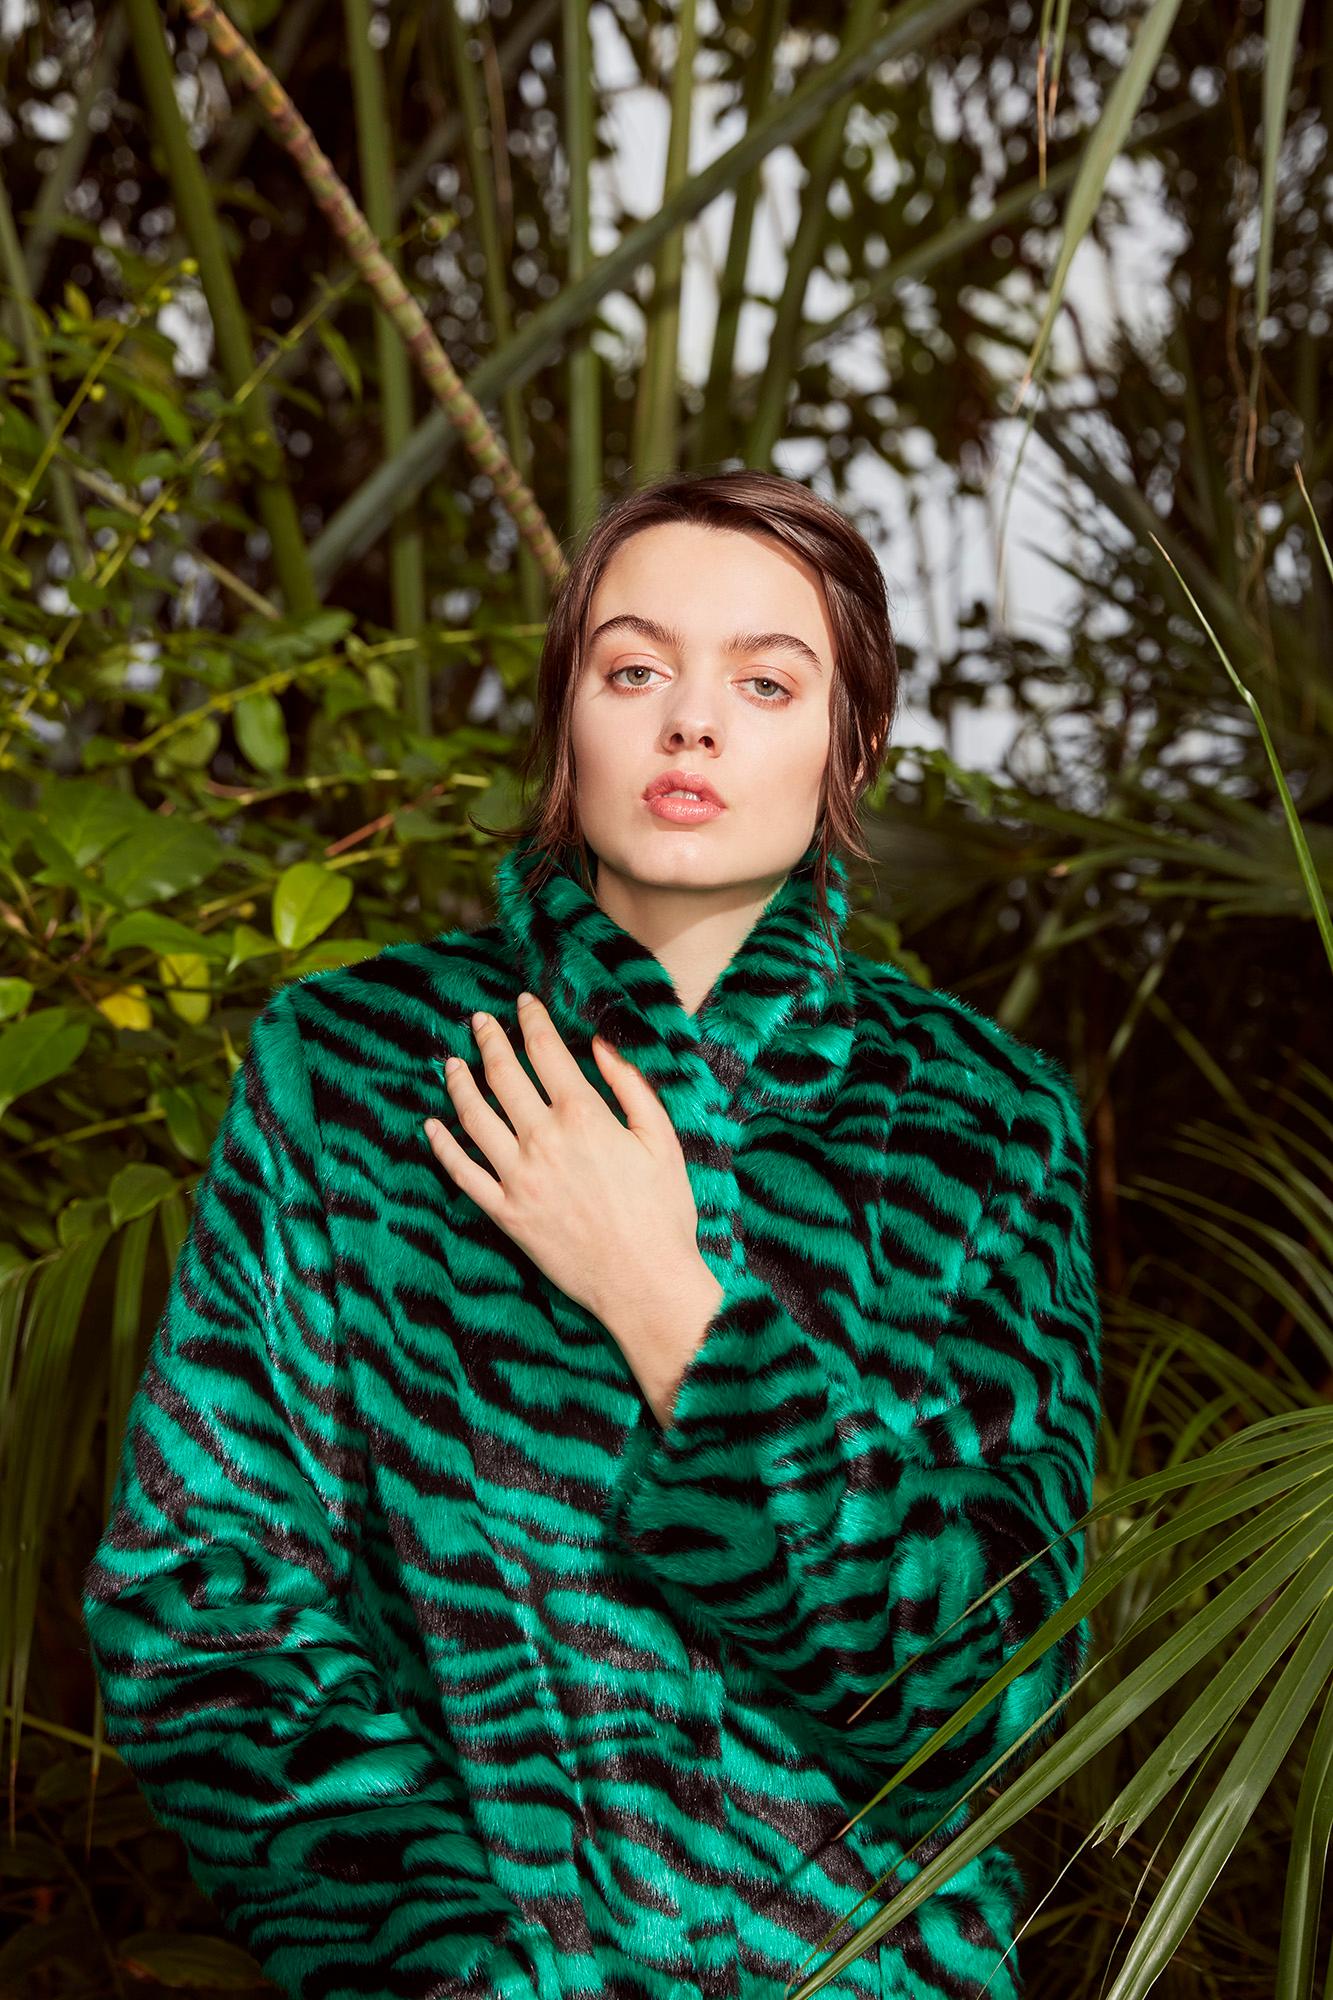 Verheyen London Esmeralda Faux Fur Coat in Emerald Green Zebra Print size uk 14 For Sale 6